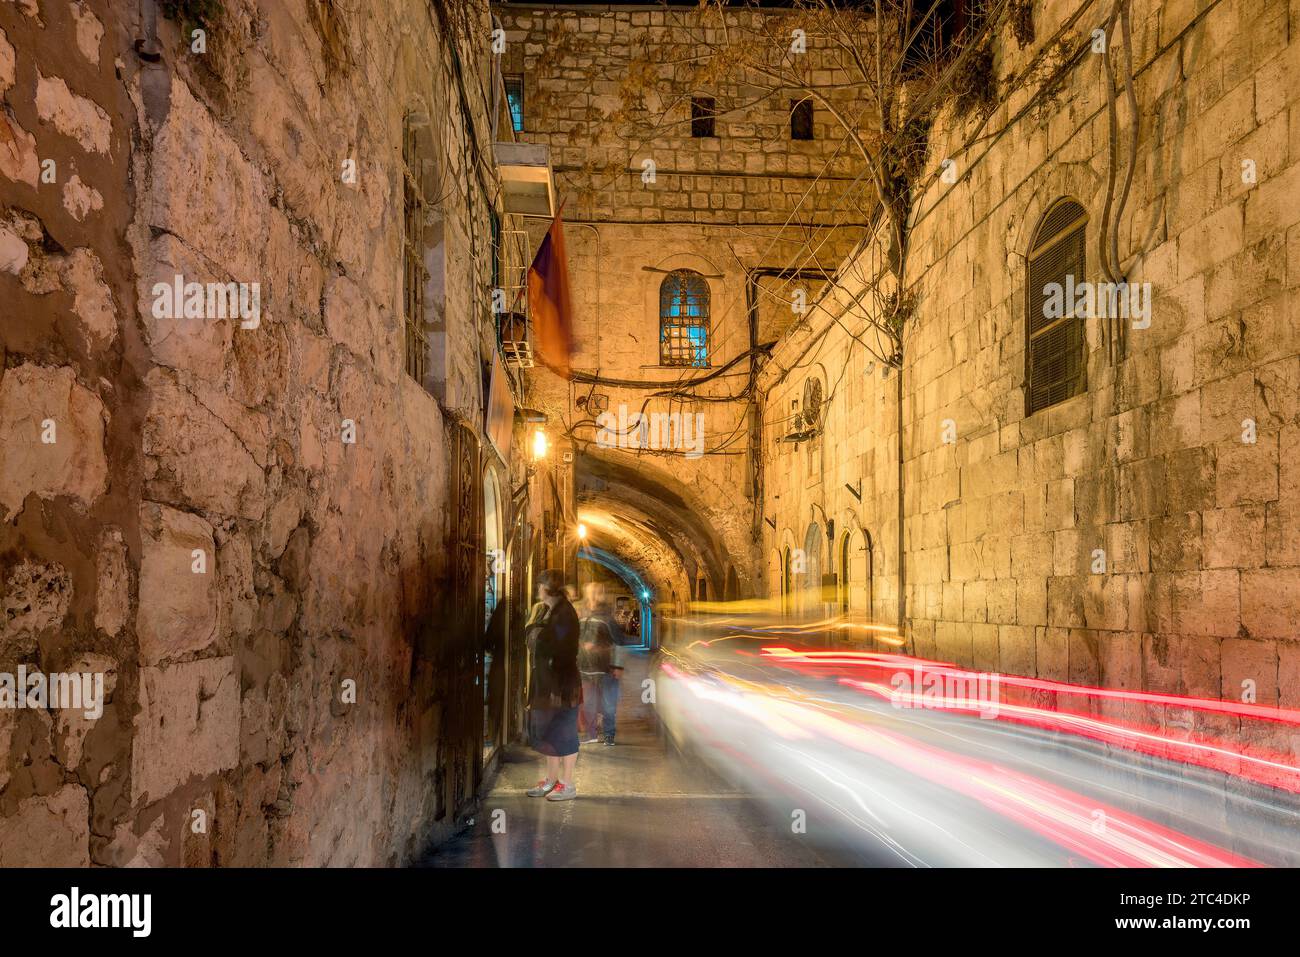 Calle de la noche en la ciudad vieja de Jerusalén, Israel. Foto de stock